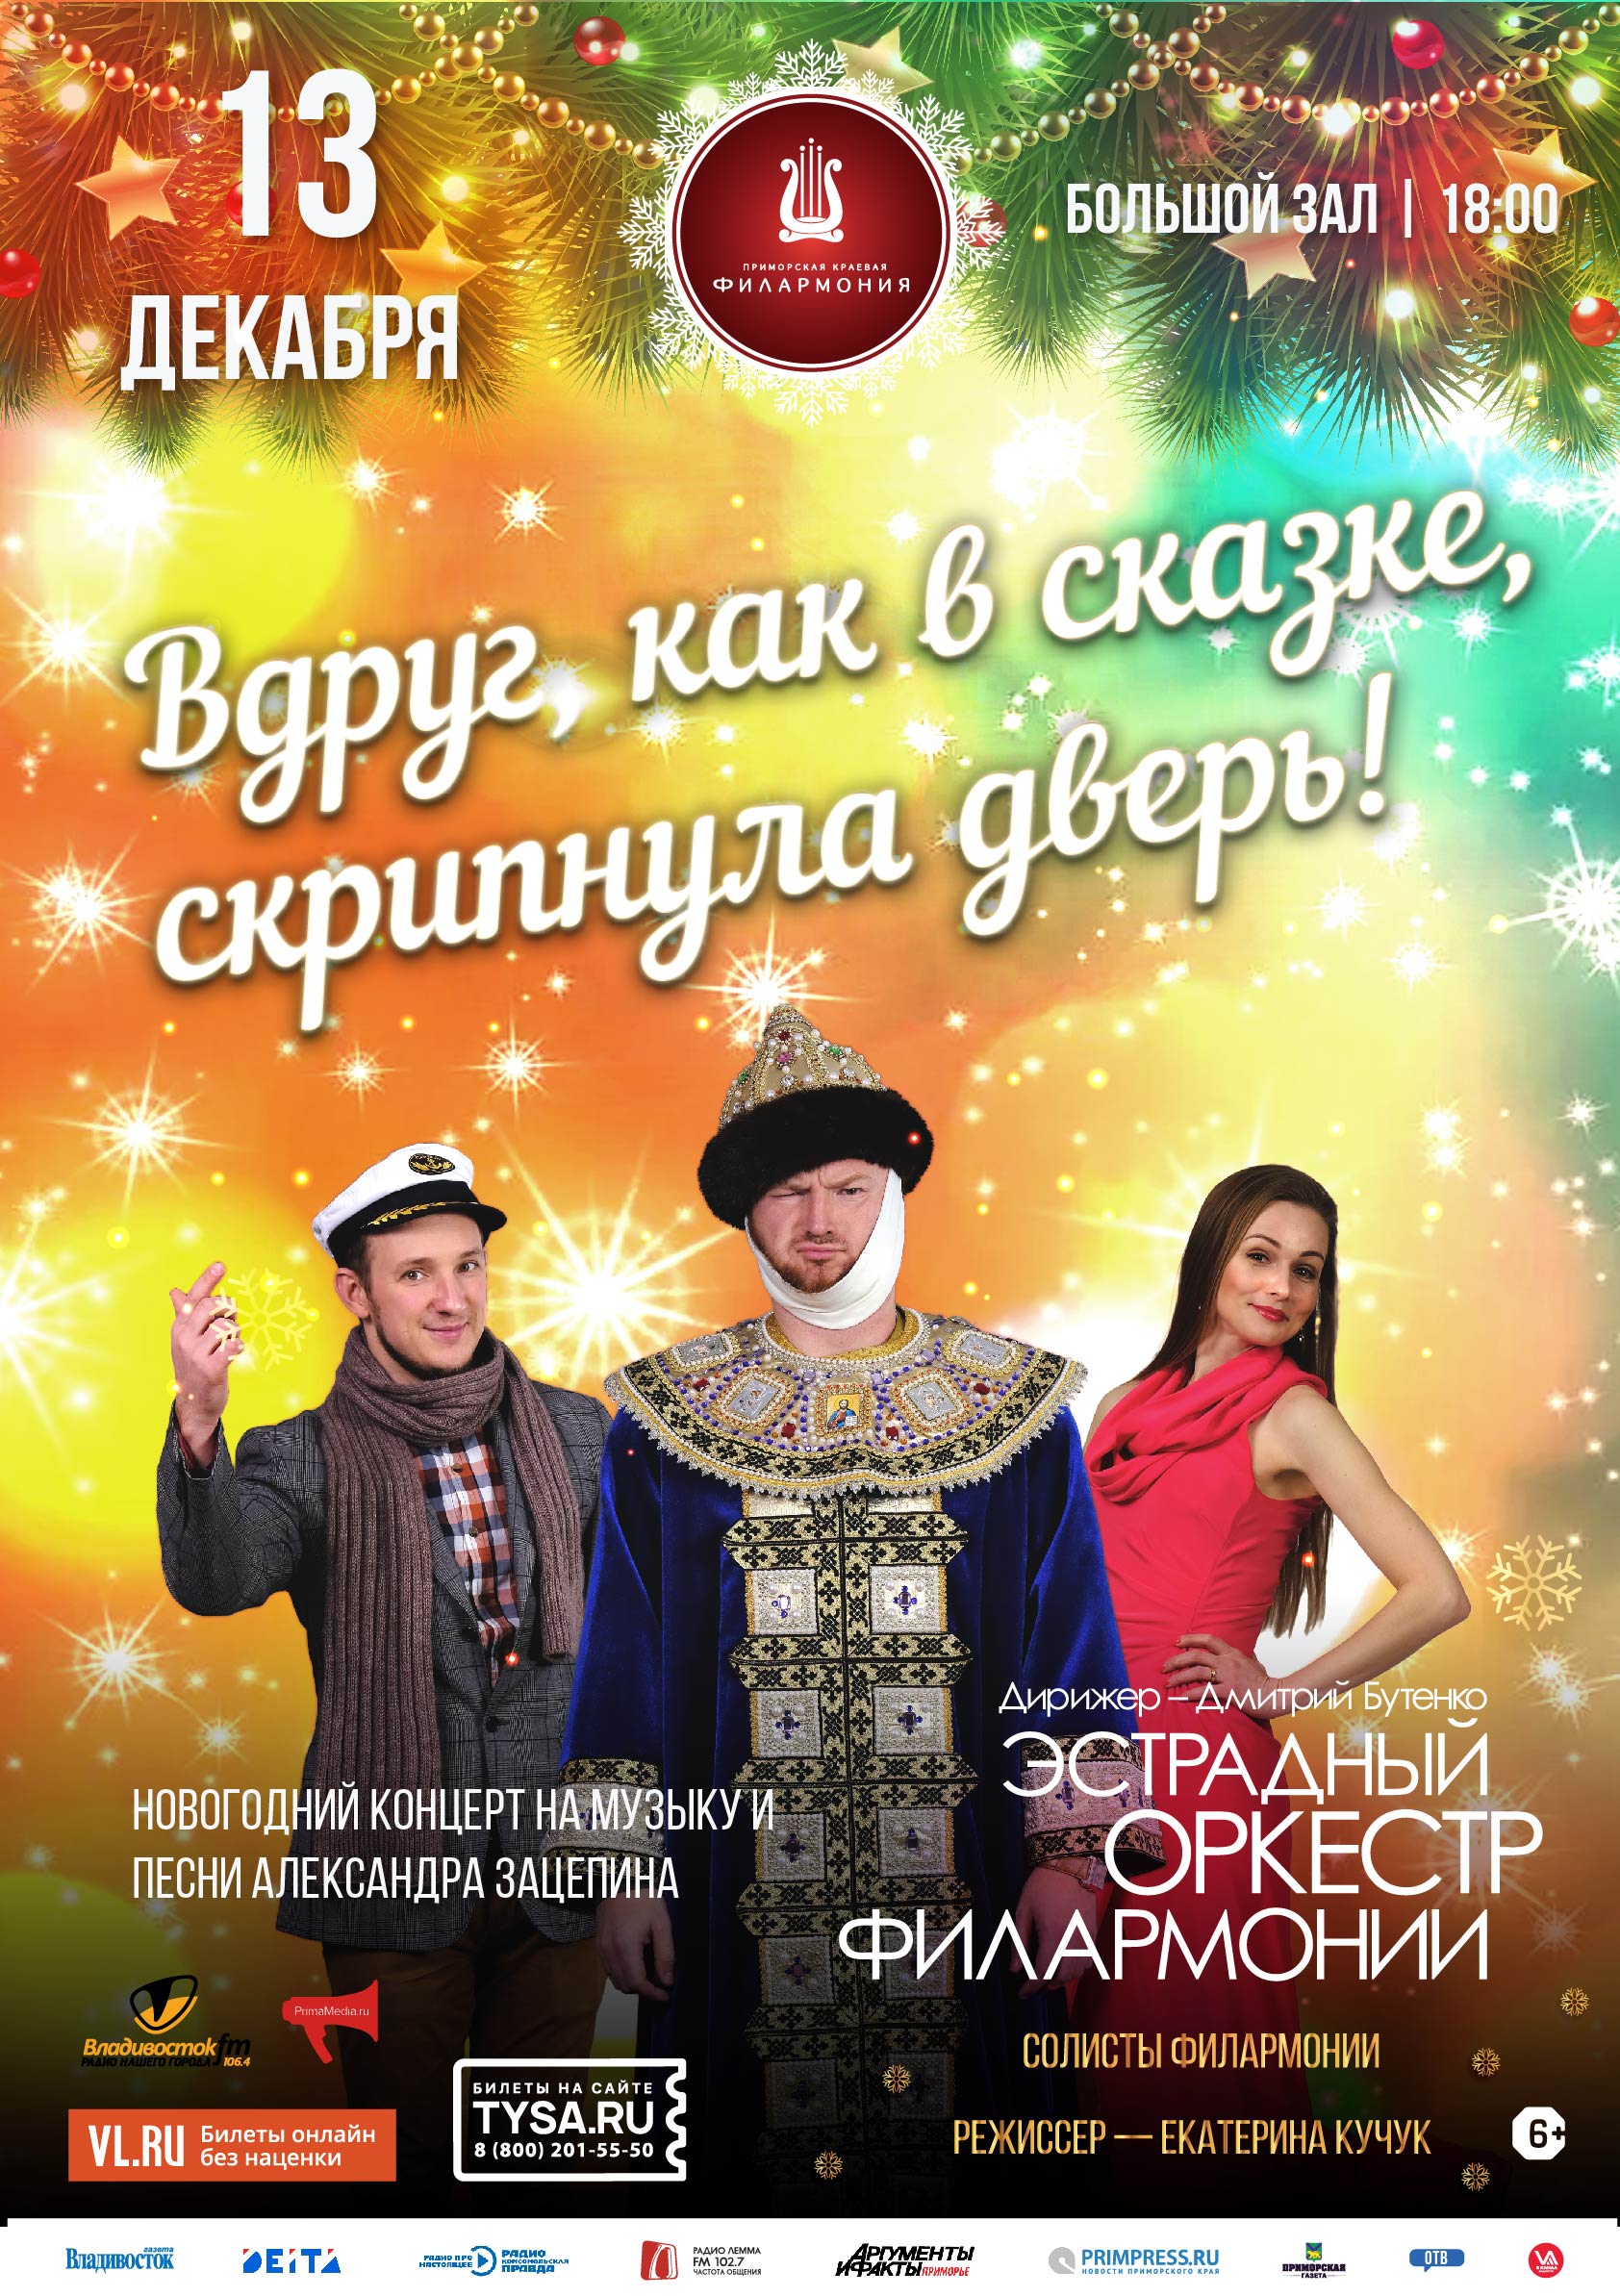 13 декабря Новогодний концерт «Вдруг как в сказке скрипнула дверь…!»  на музыку и песни Александра Зацепина